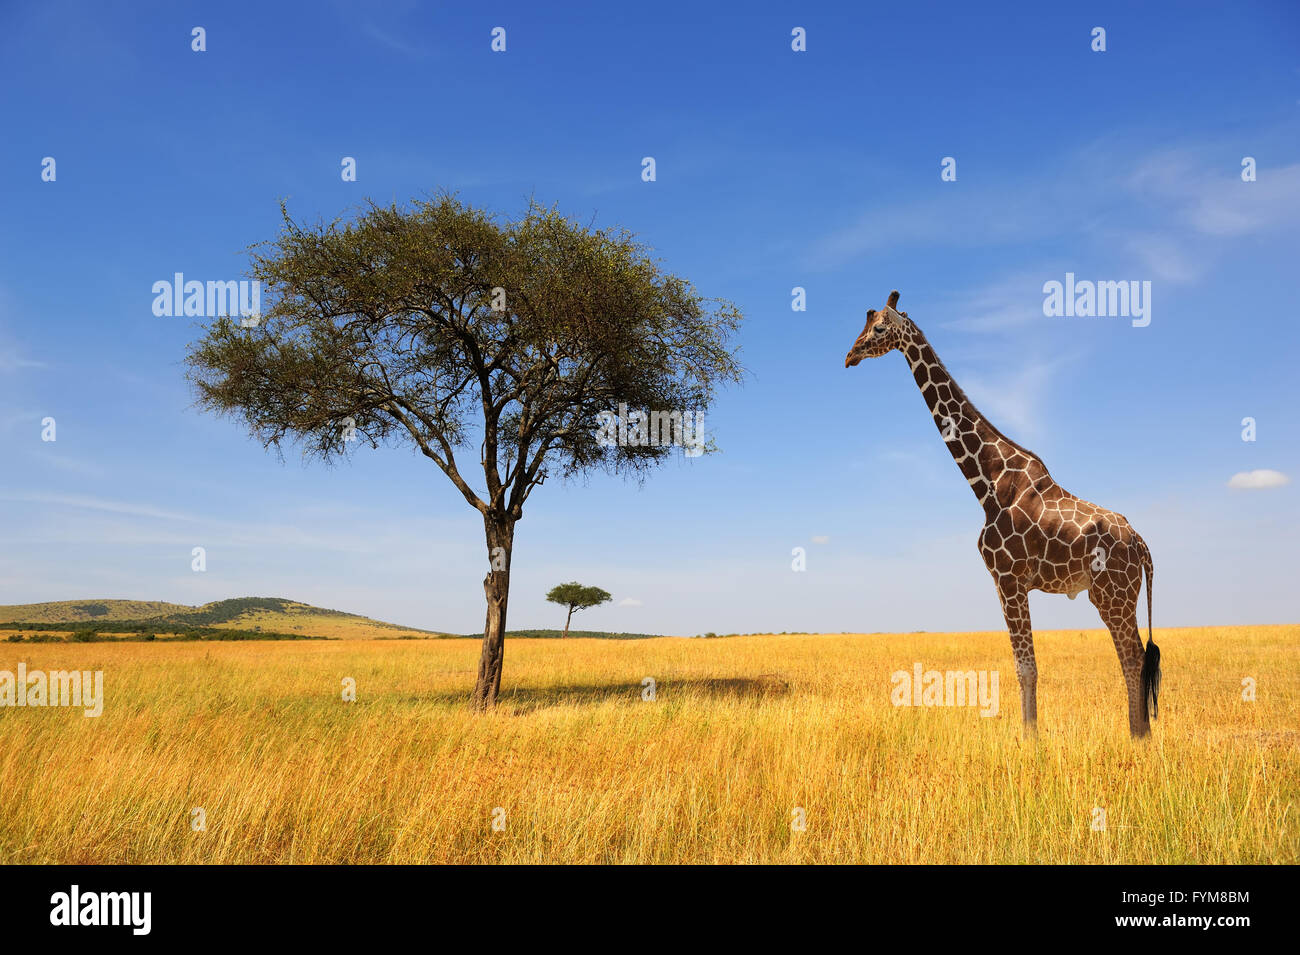 Beau paysage avec arbre et girafe en Afrique Banque D'Images